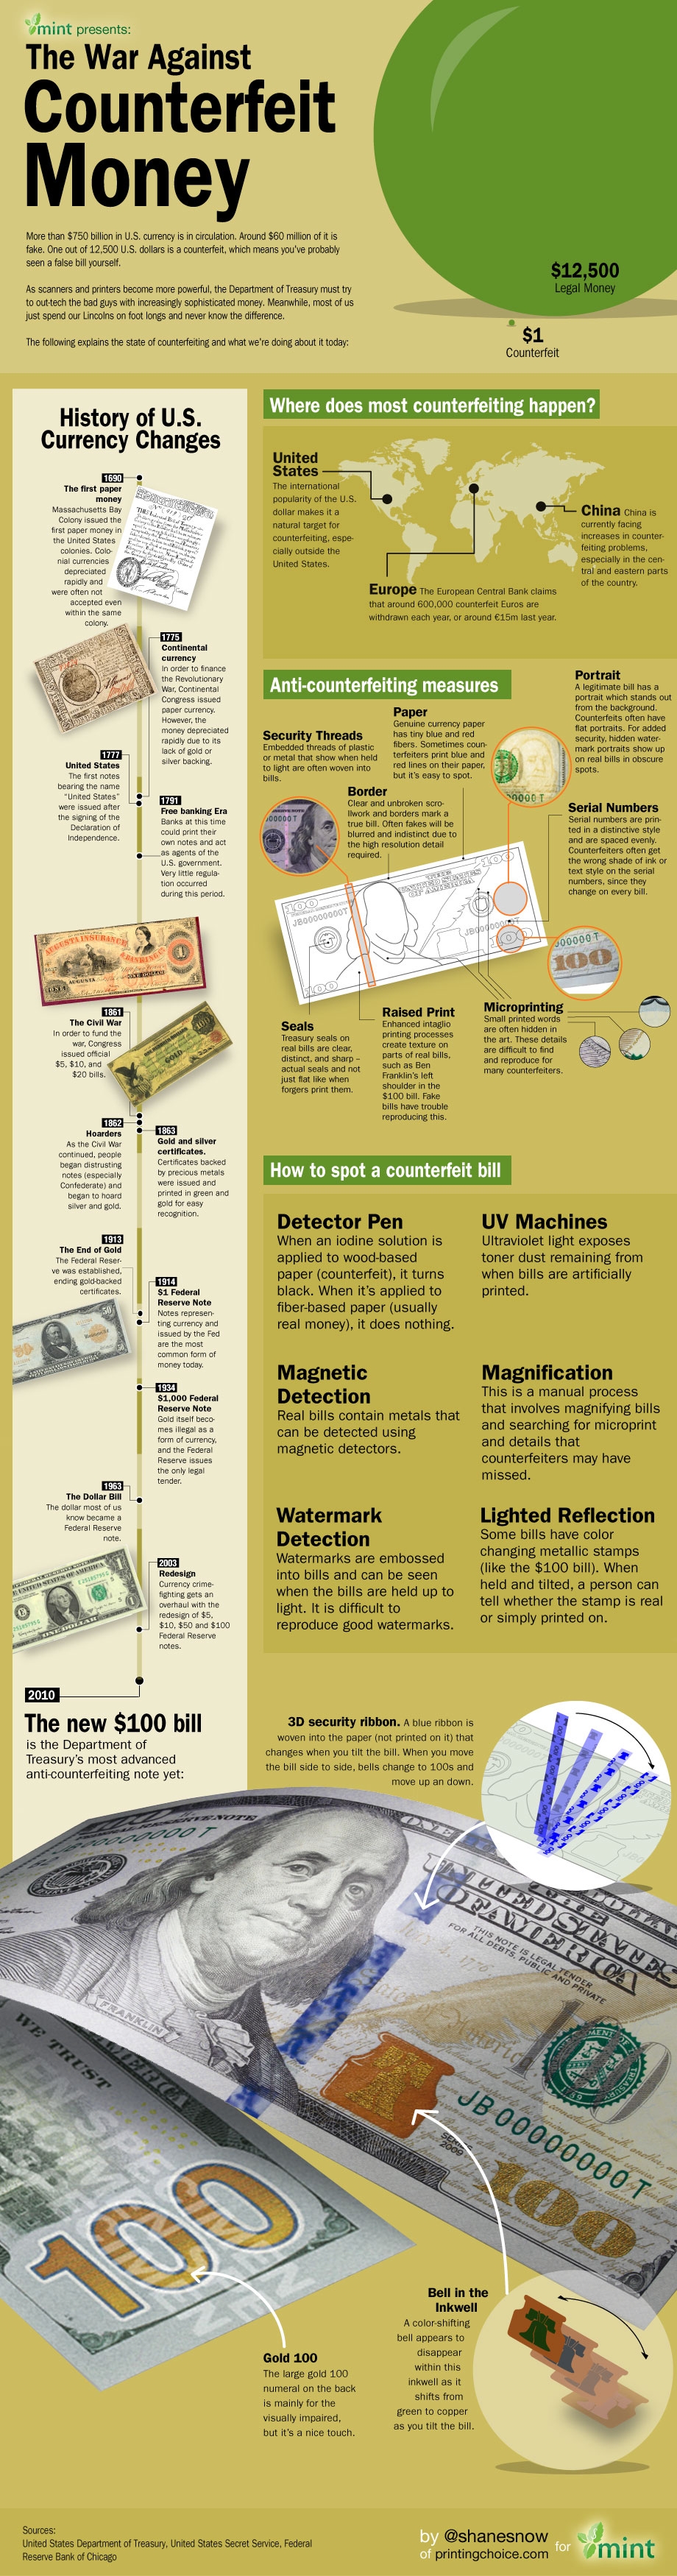 Counterfeit Money Infographic